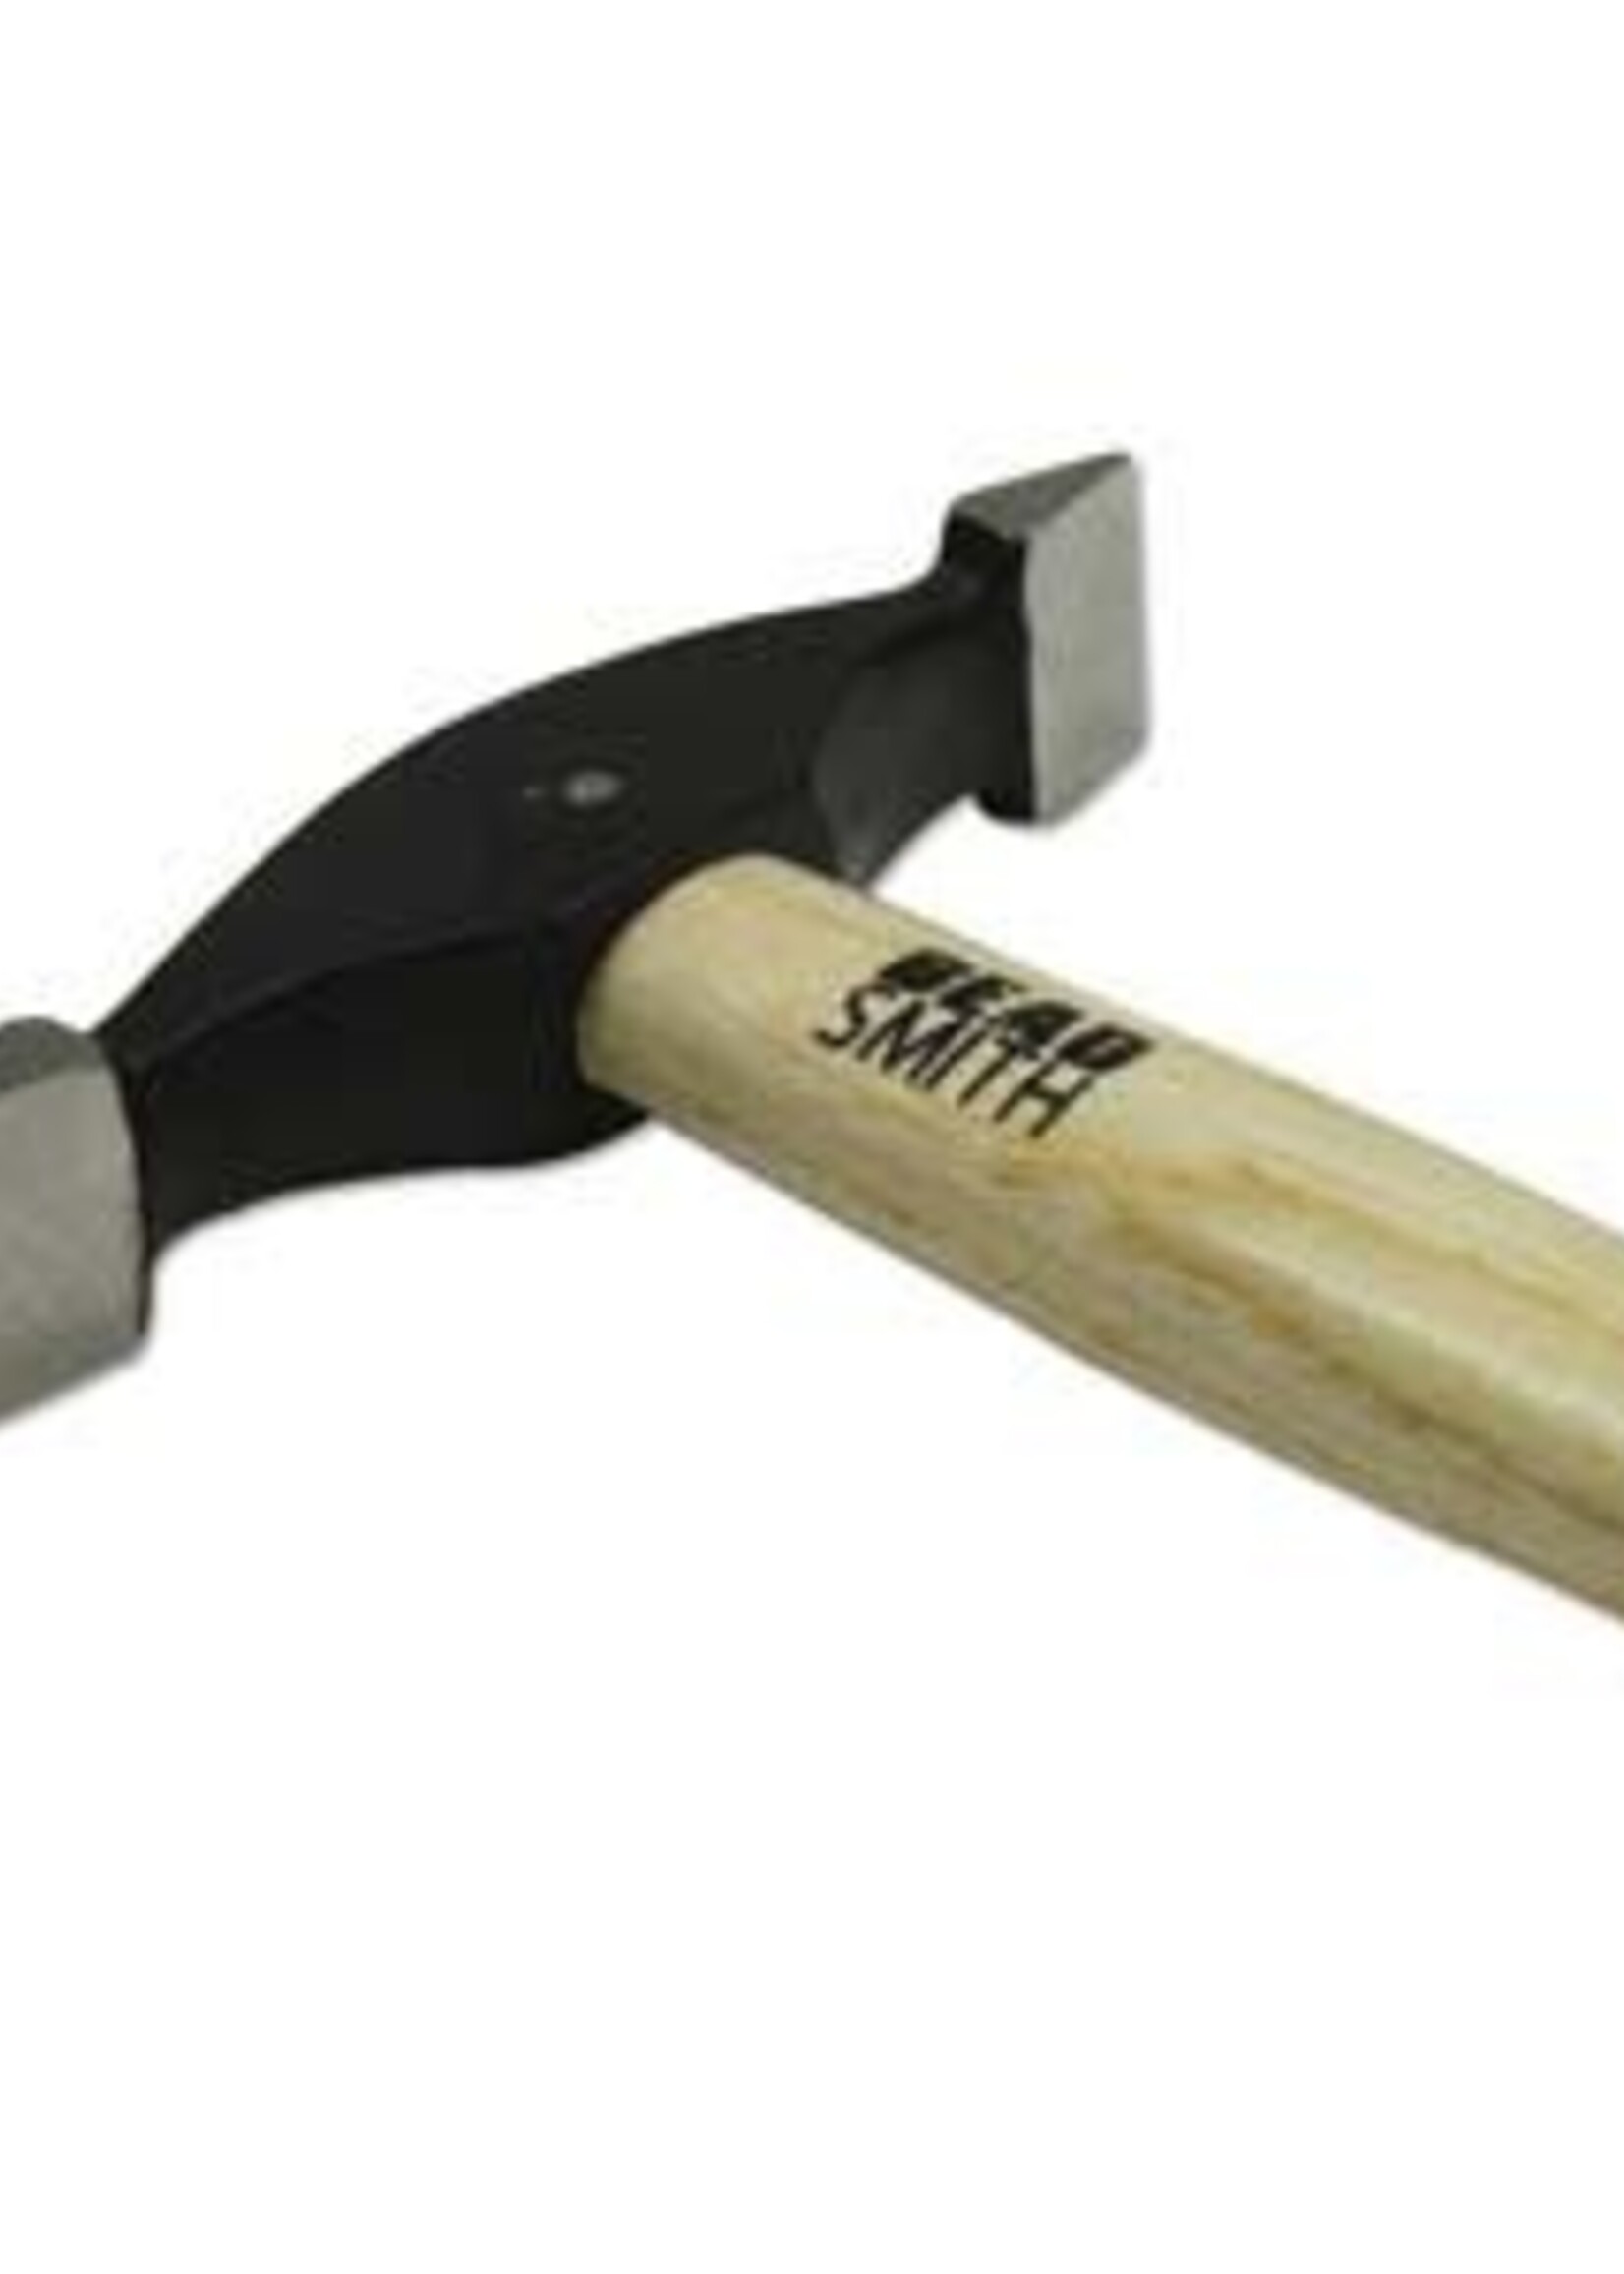 Sharp Texturing Hammer